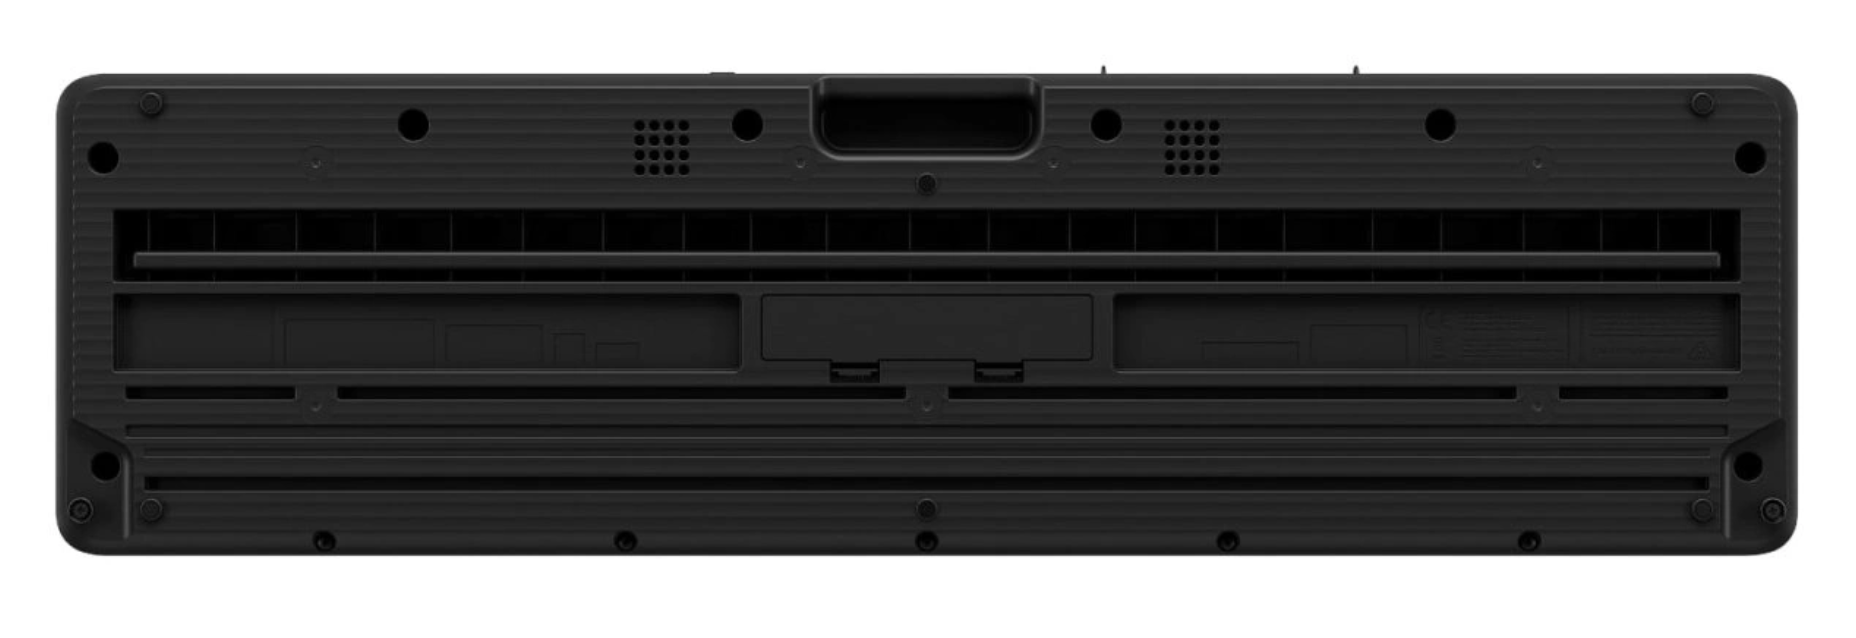 Clavier Casio LK S450